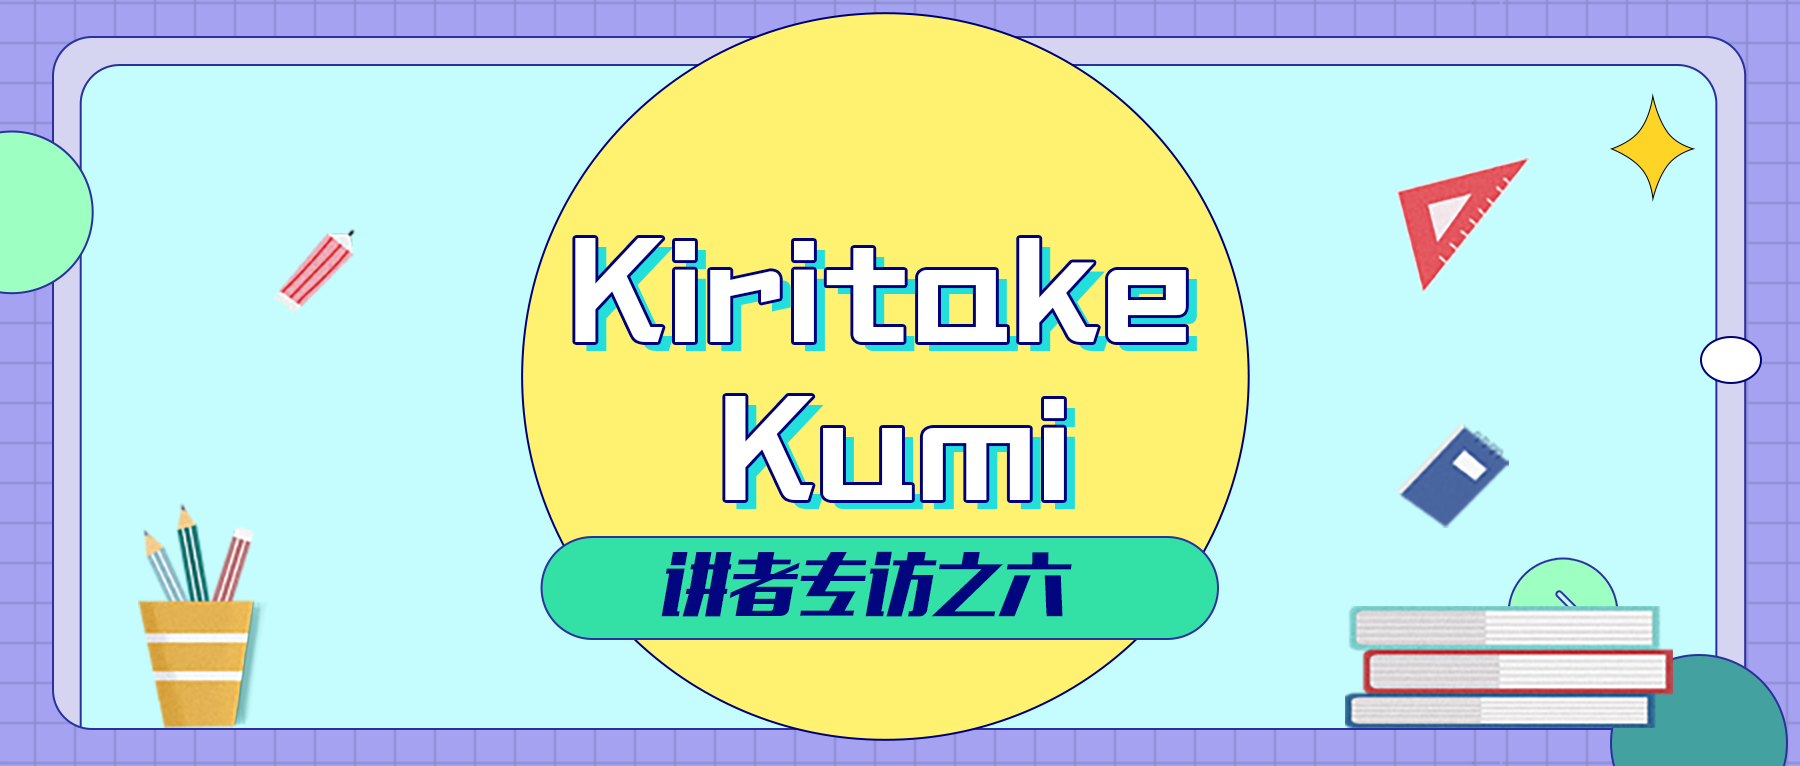 2020中文学生开源年会  讲者系列专访之六：Kiritake Kumi